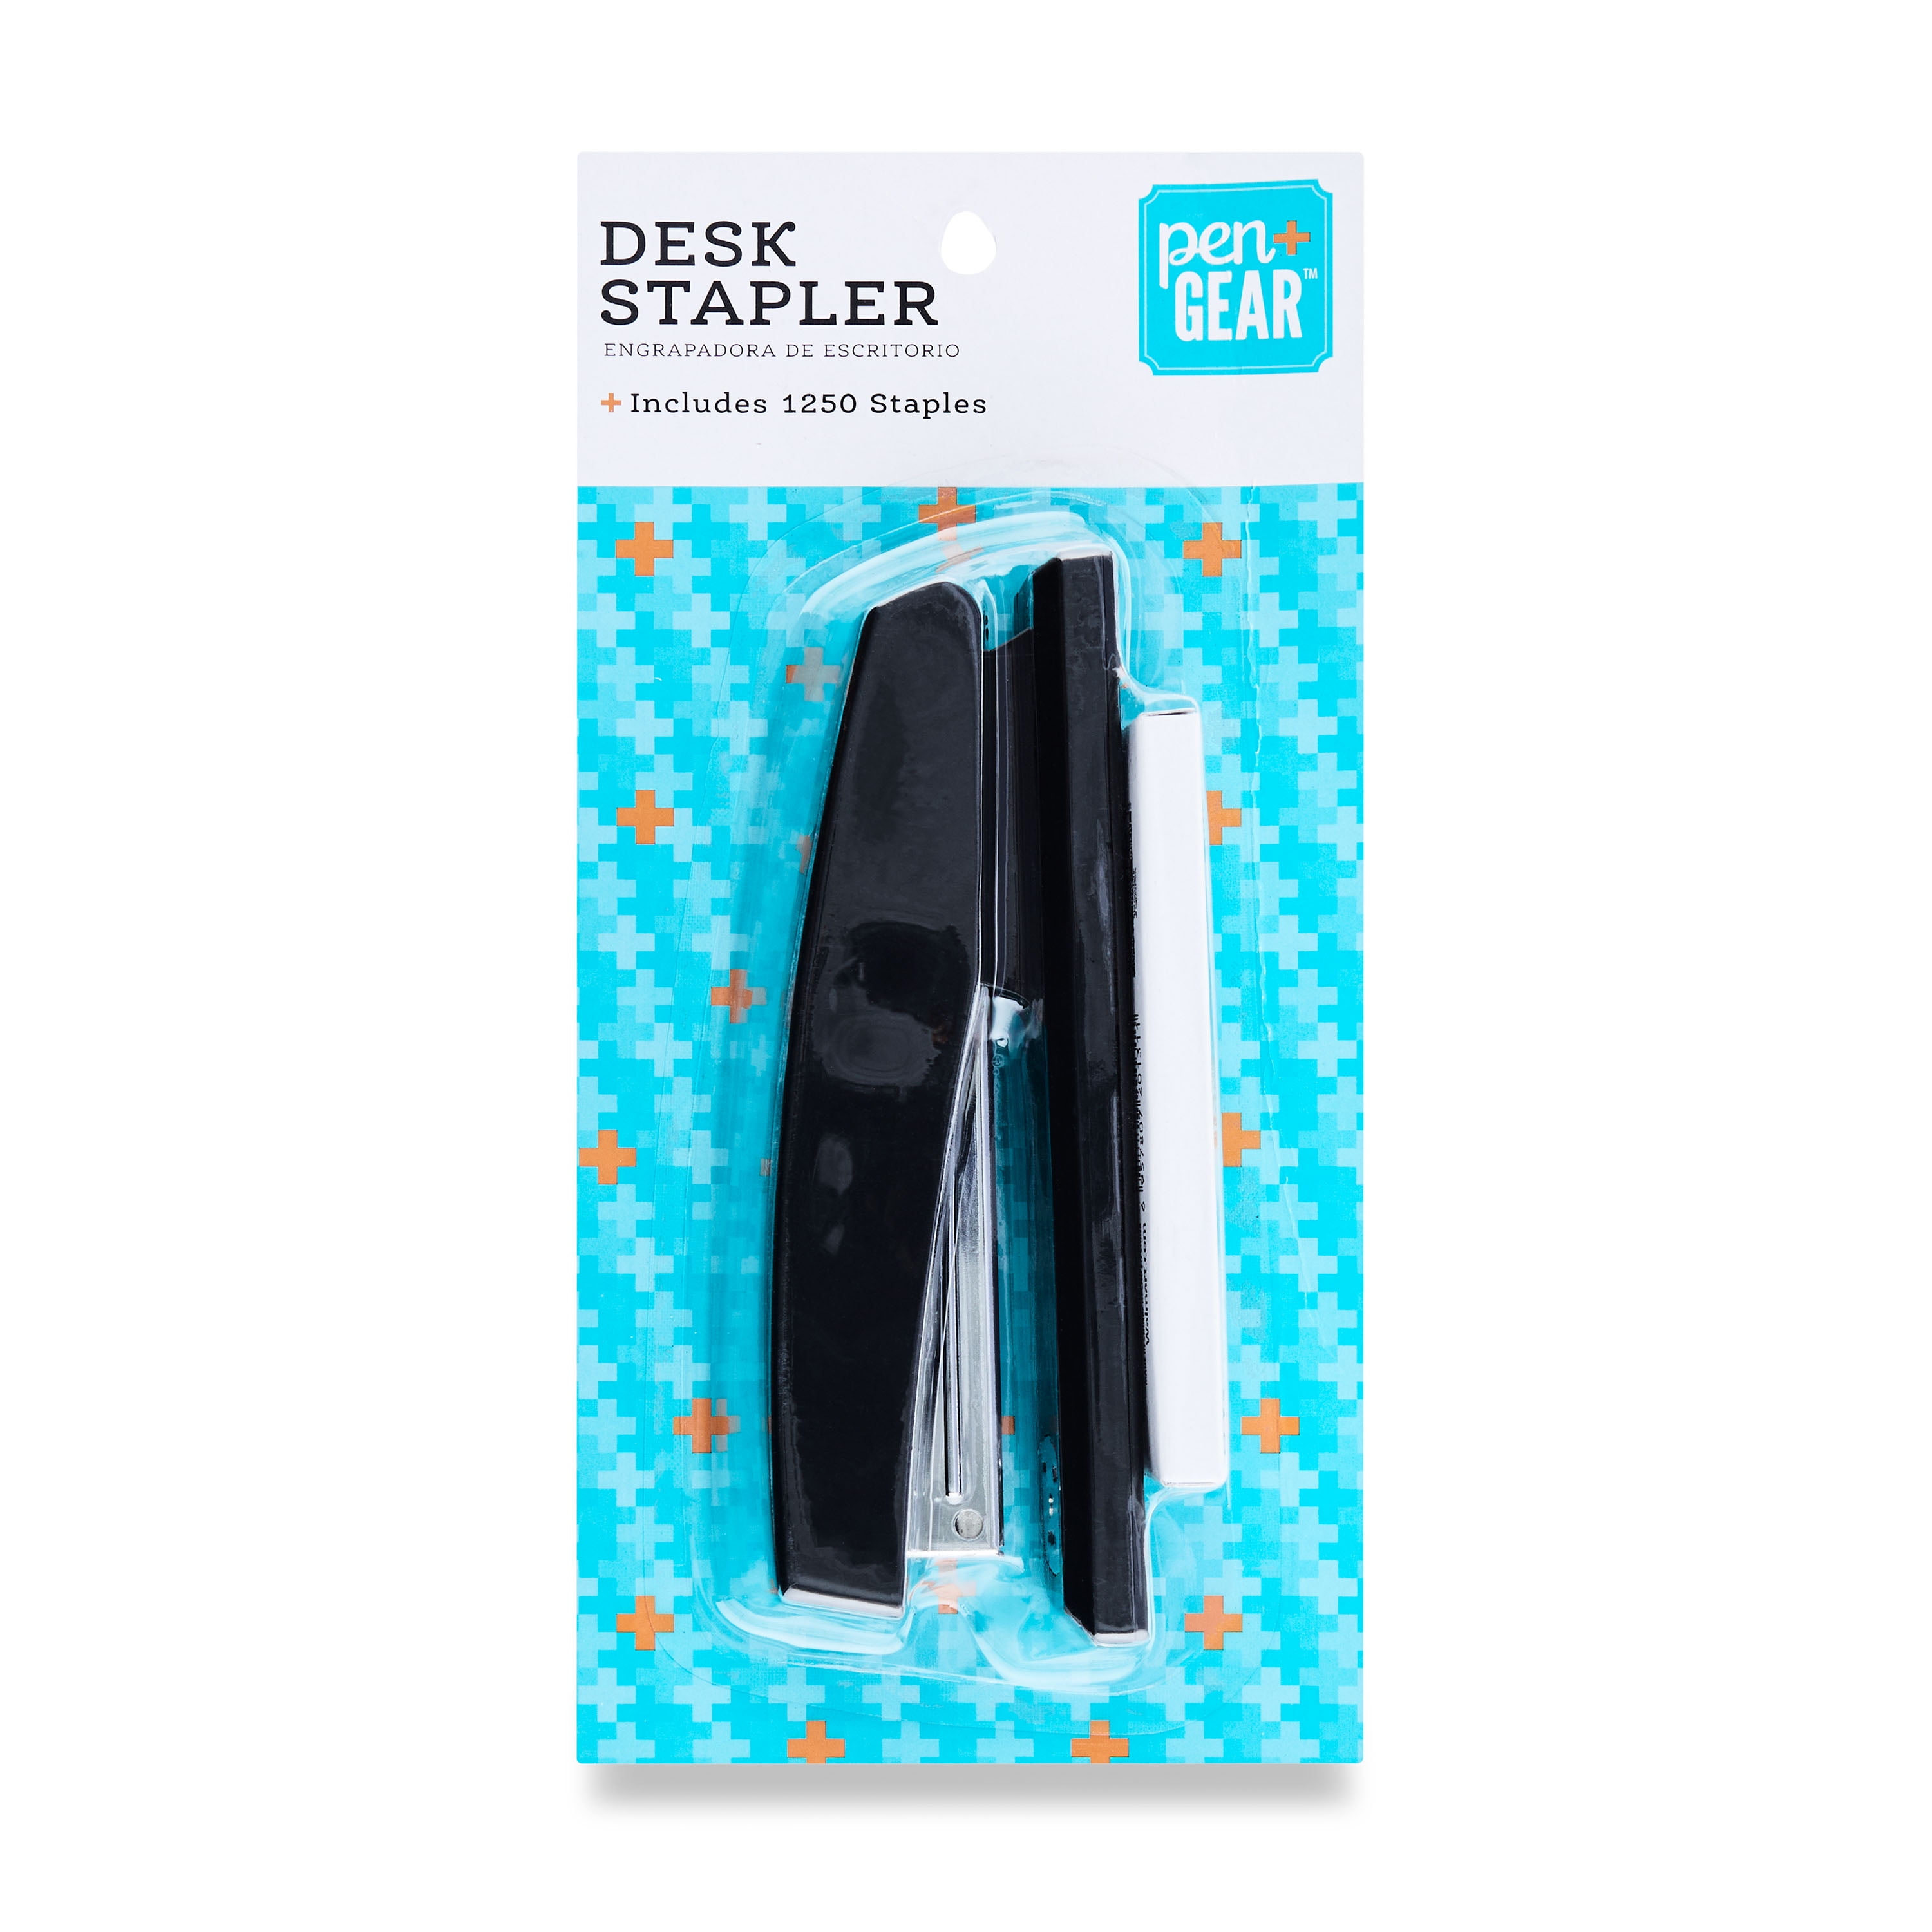 Pen + Gear Standard Staples, 5,000 Count, 1/4 Length, Model No.KK1400-SRP